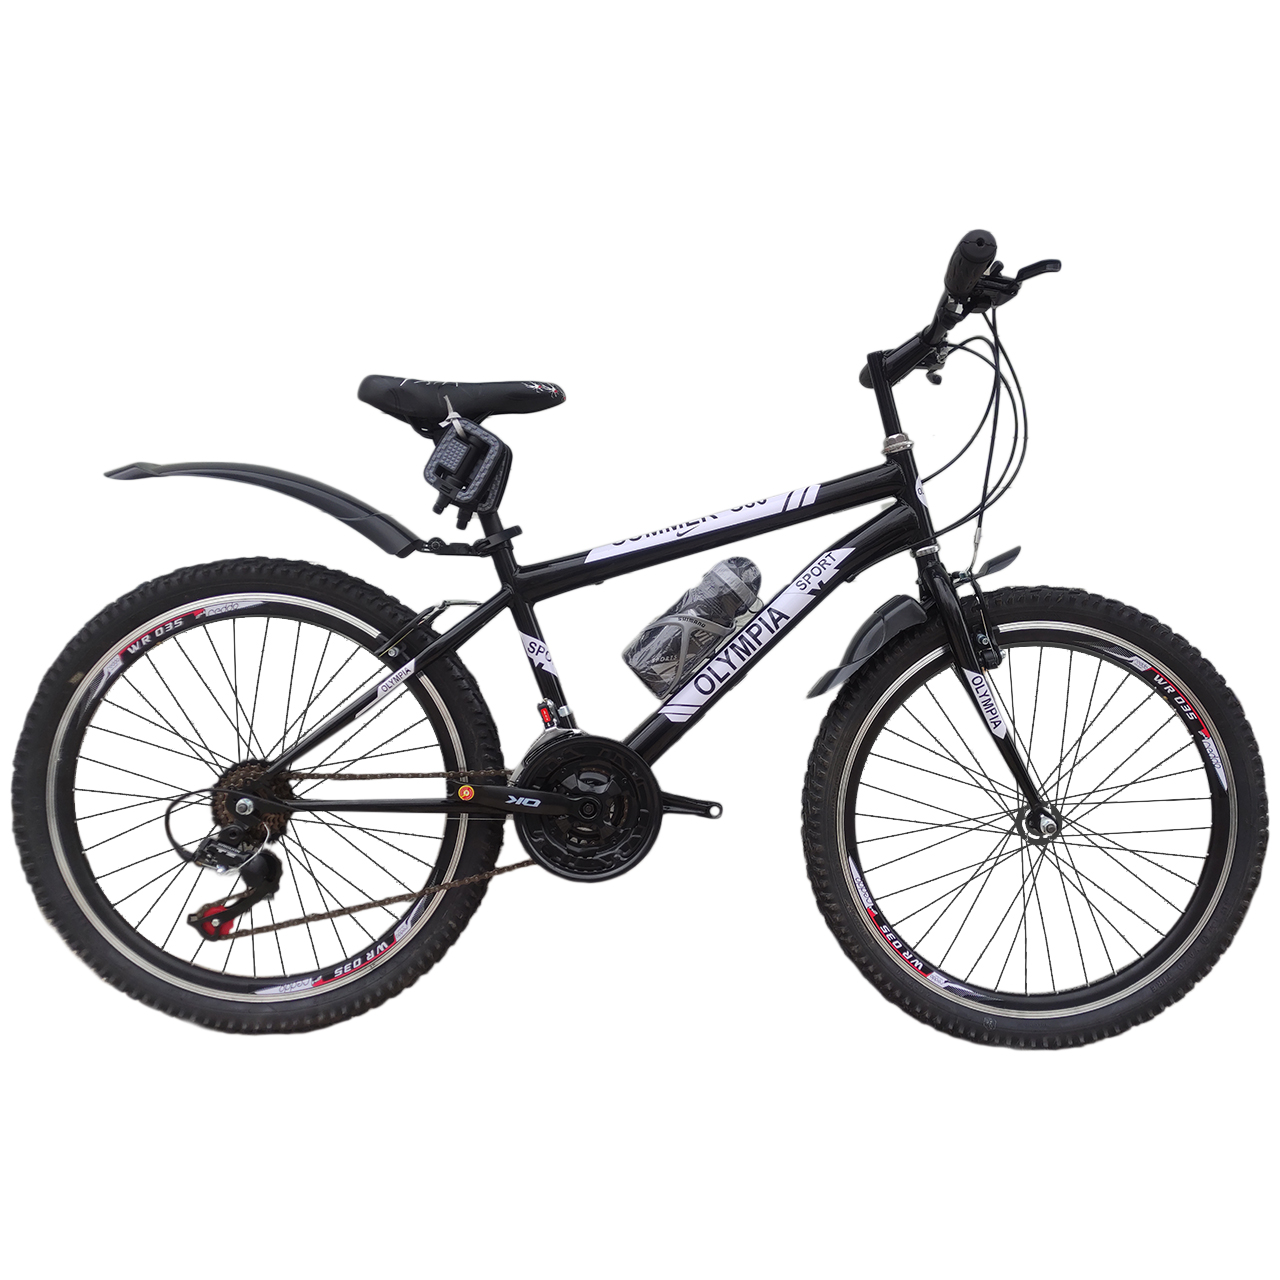 نکته خرید - قیمت روز دوچرخه کوهستان المپیا مدل summer 025 سایز 24 خرید